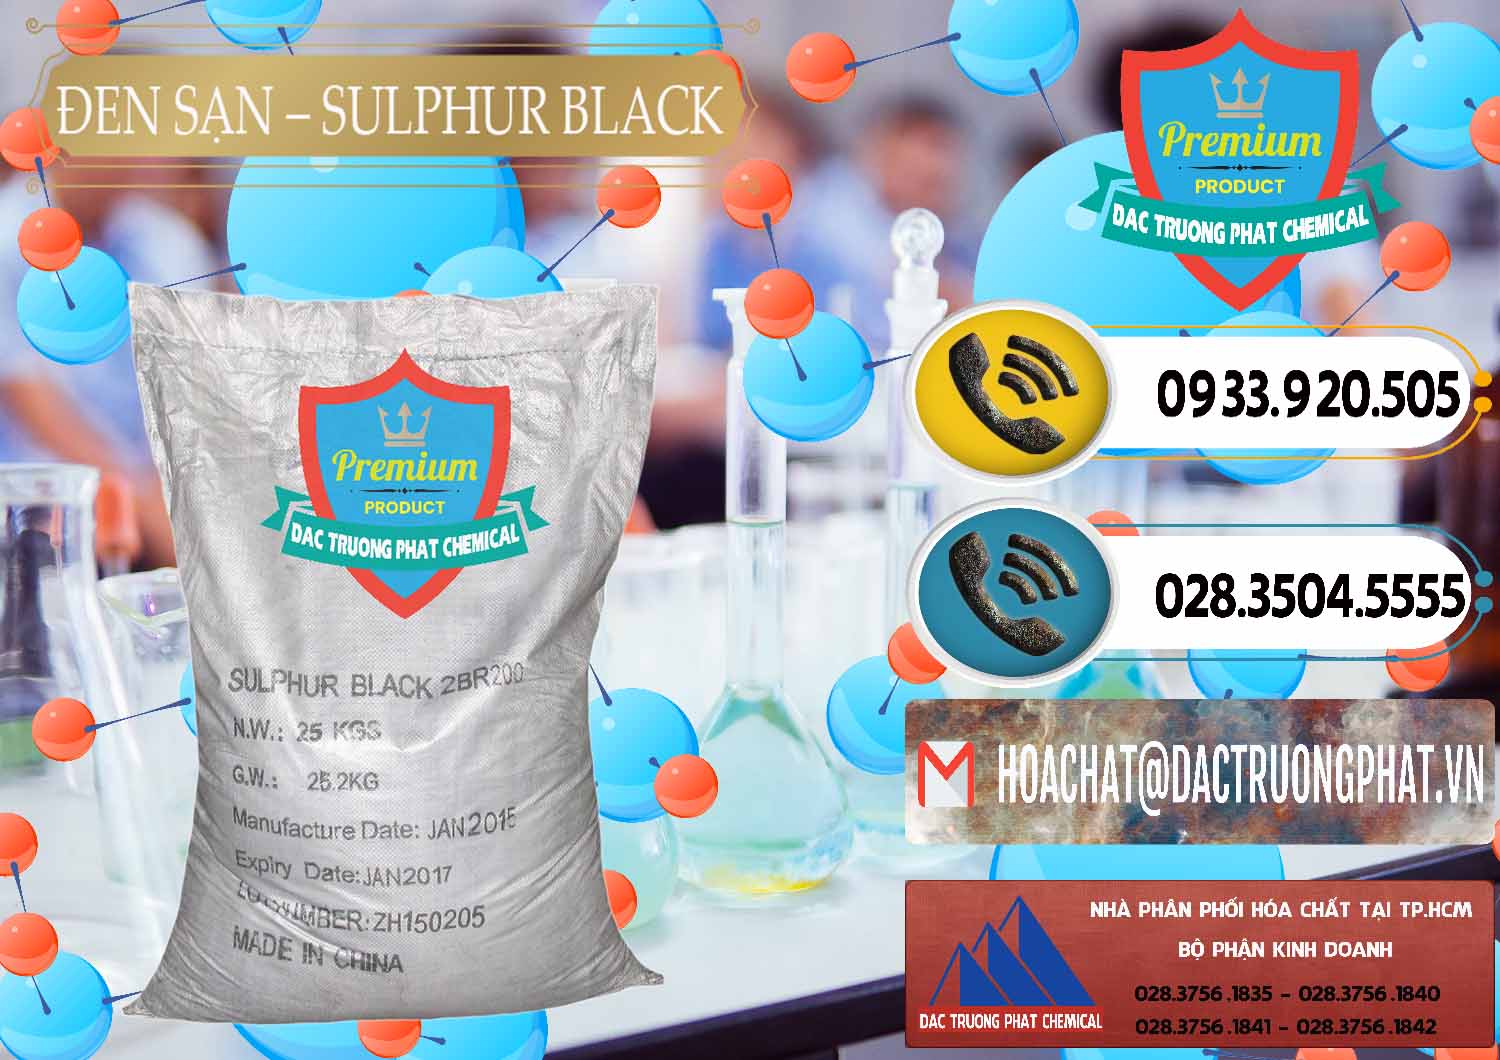 Cty bán ( cung ứng ) Đen Sạn – Sulphur Black Trung Quốc China - 0062 - Công ty chuyên cung cấp và kinh doanh hóa chất tại TP.HCM - hoachatdetnhuom.vn